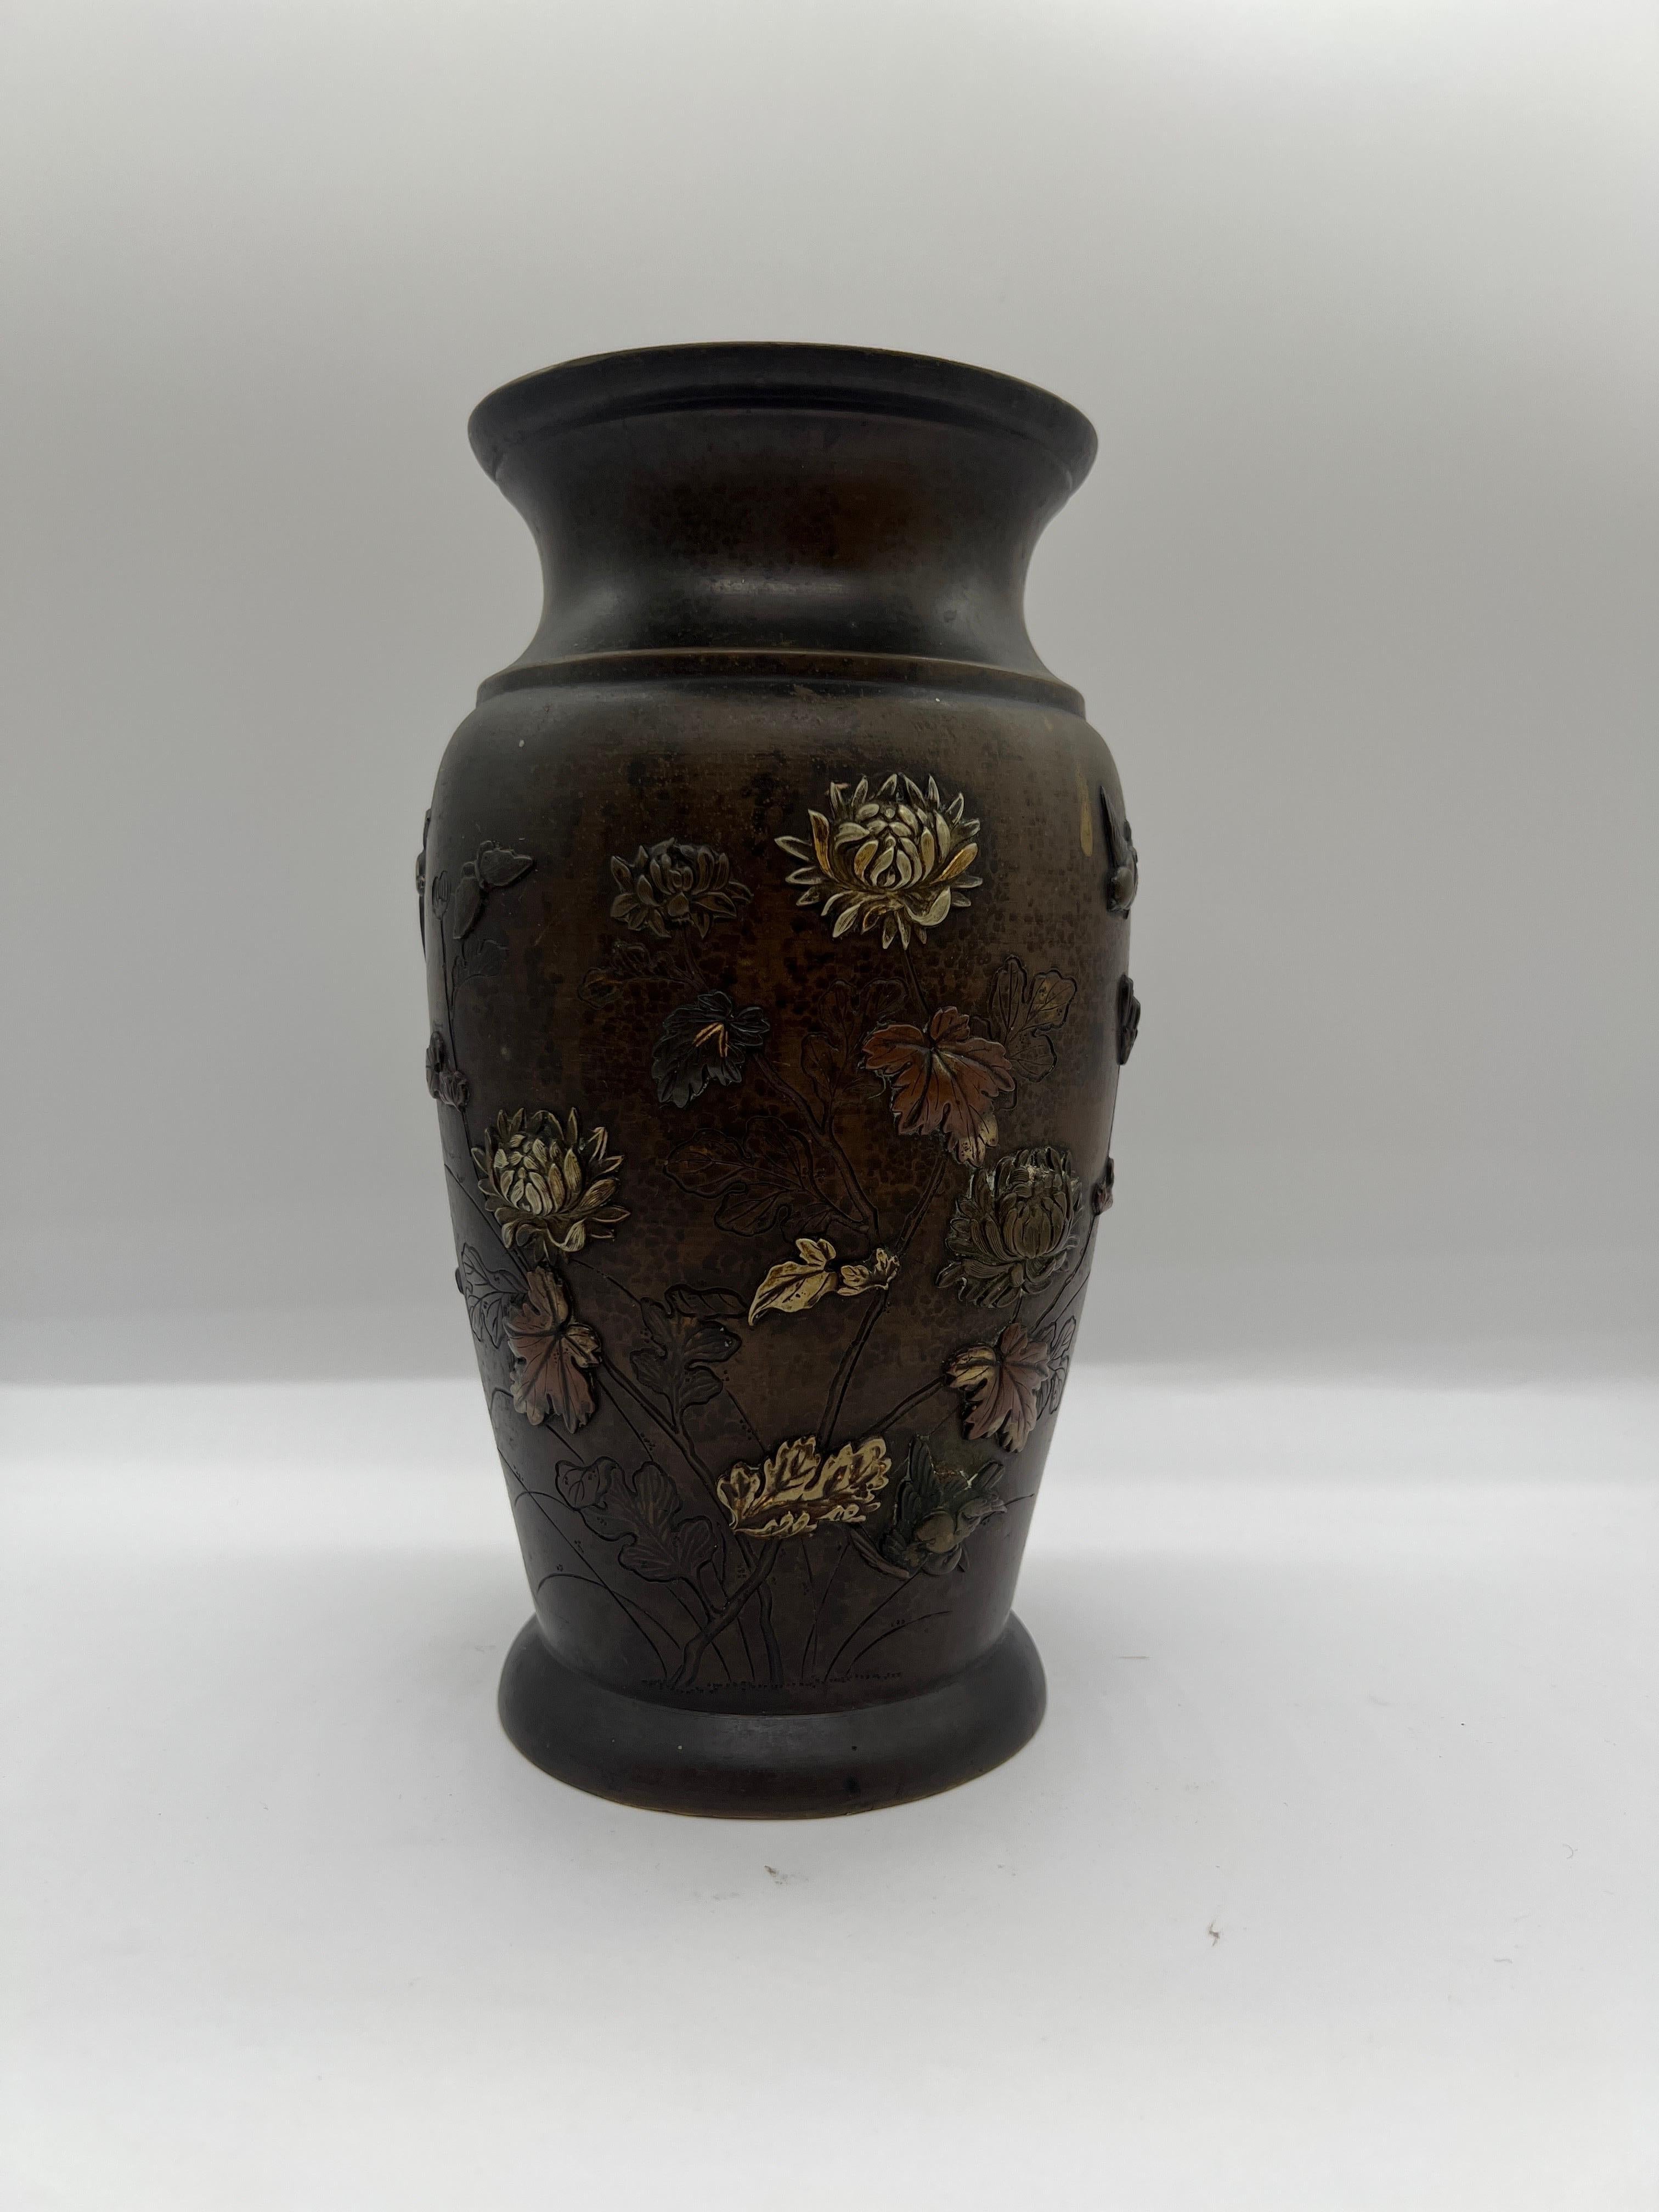 Japonais, Période Meiji.

Vase en bronze antique construit en bronze. Le vase présente plusieurs motifs traditionnels, notamment des fleurs de lotus, des oiseaux en vol et d'autres détails floraux. Différents matériaux métalliques ont été utilisés